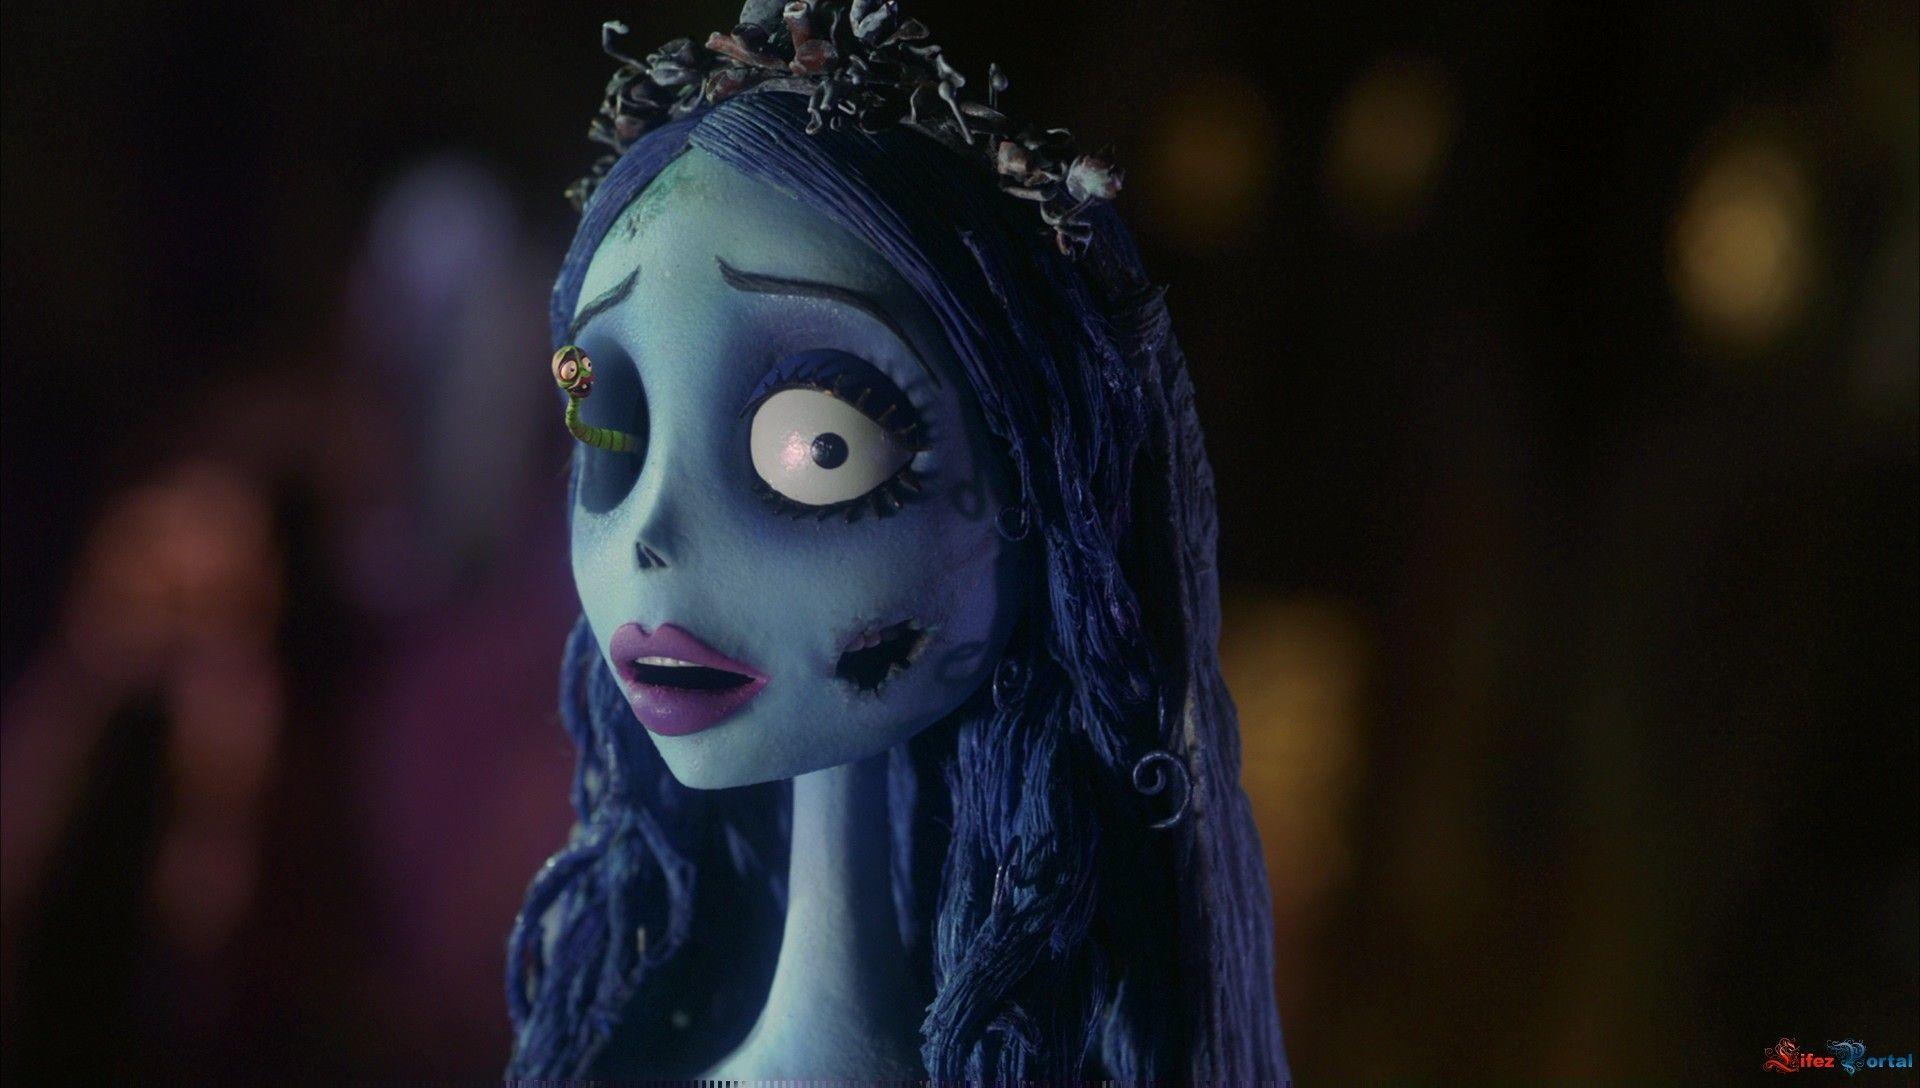 LiveAction Corpse Bride Movie Fans Want Jenna Ortega  Timothée Chalamet